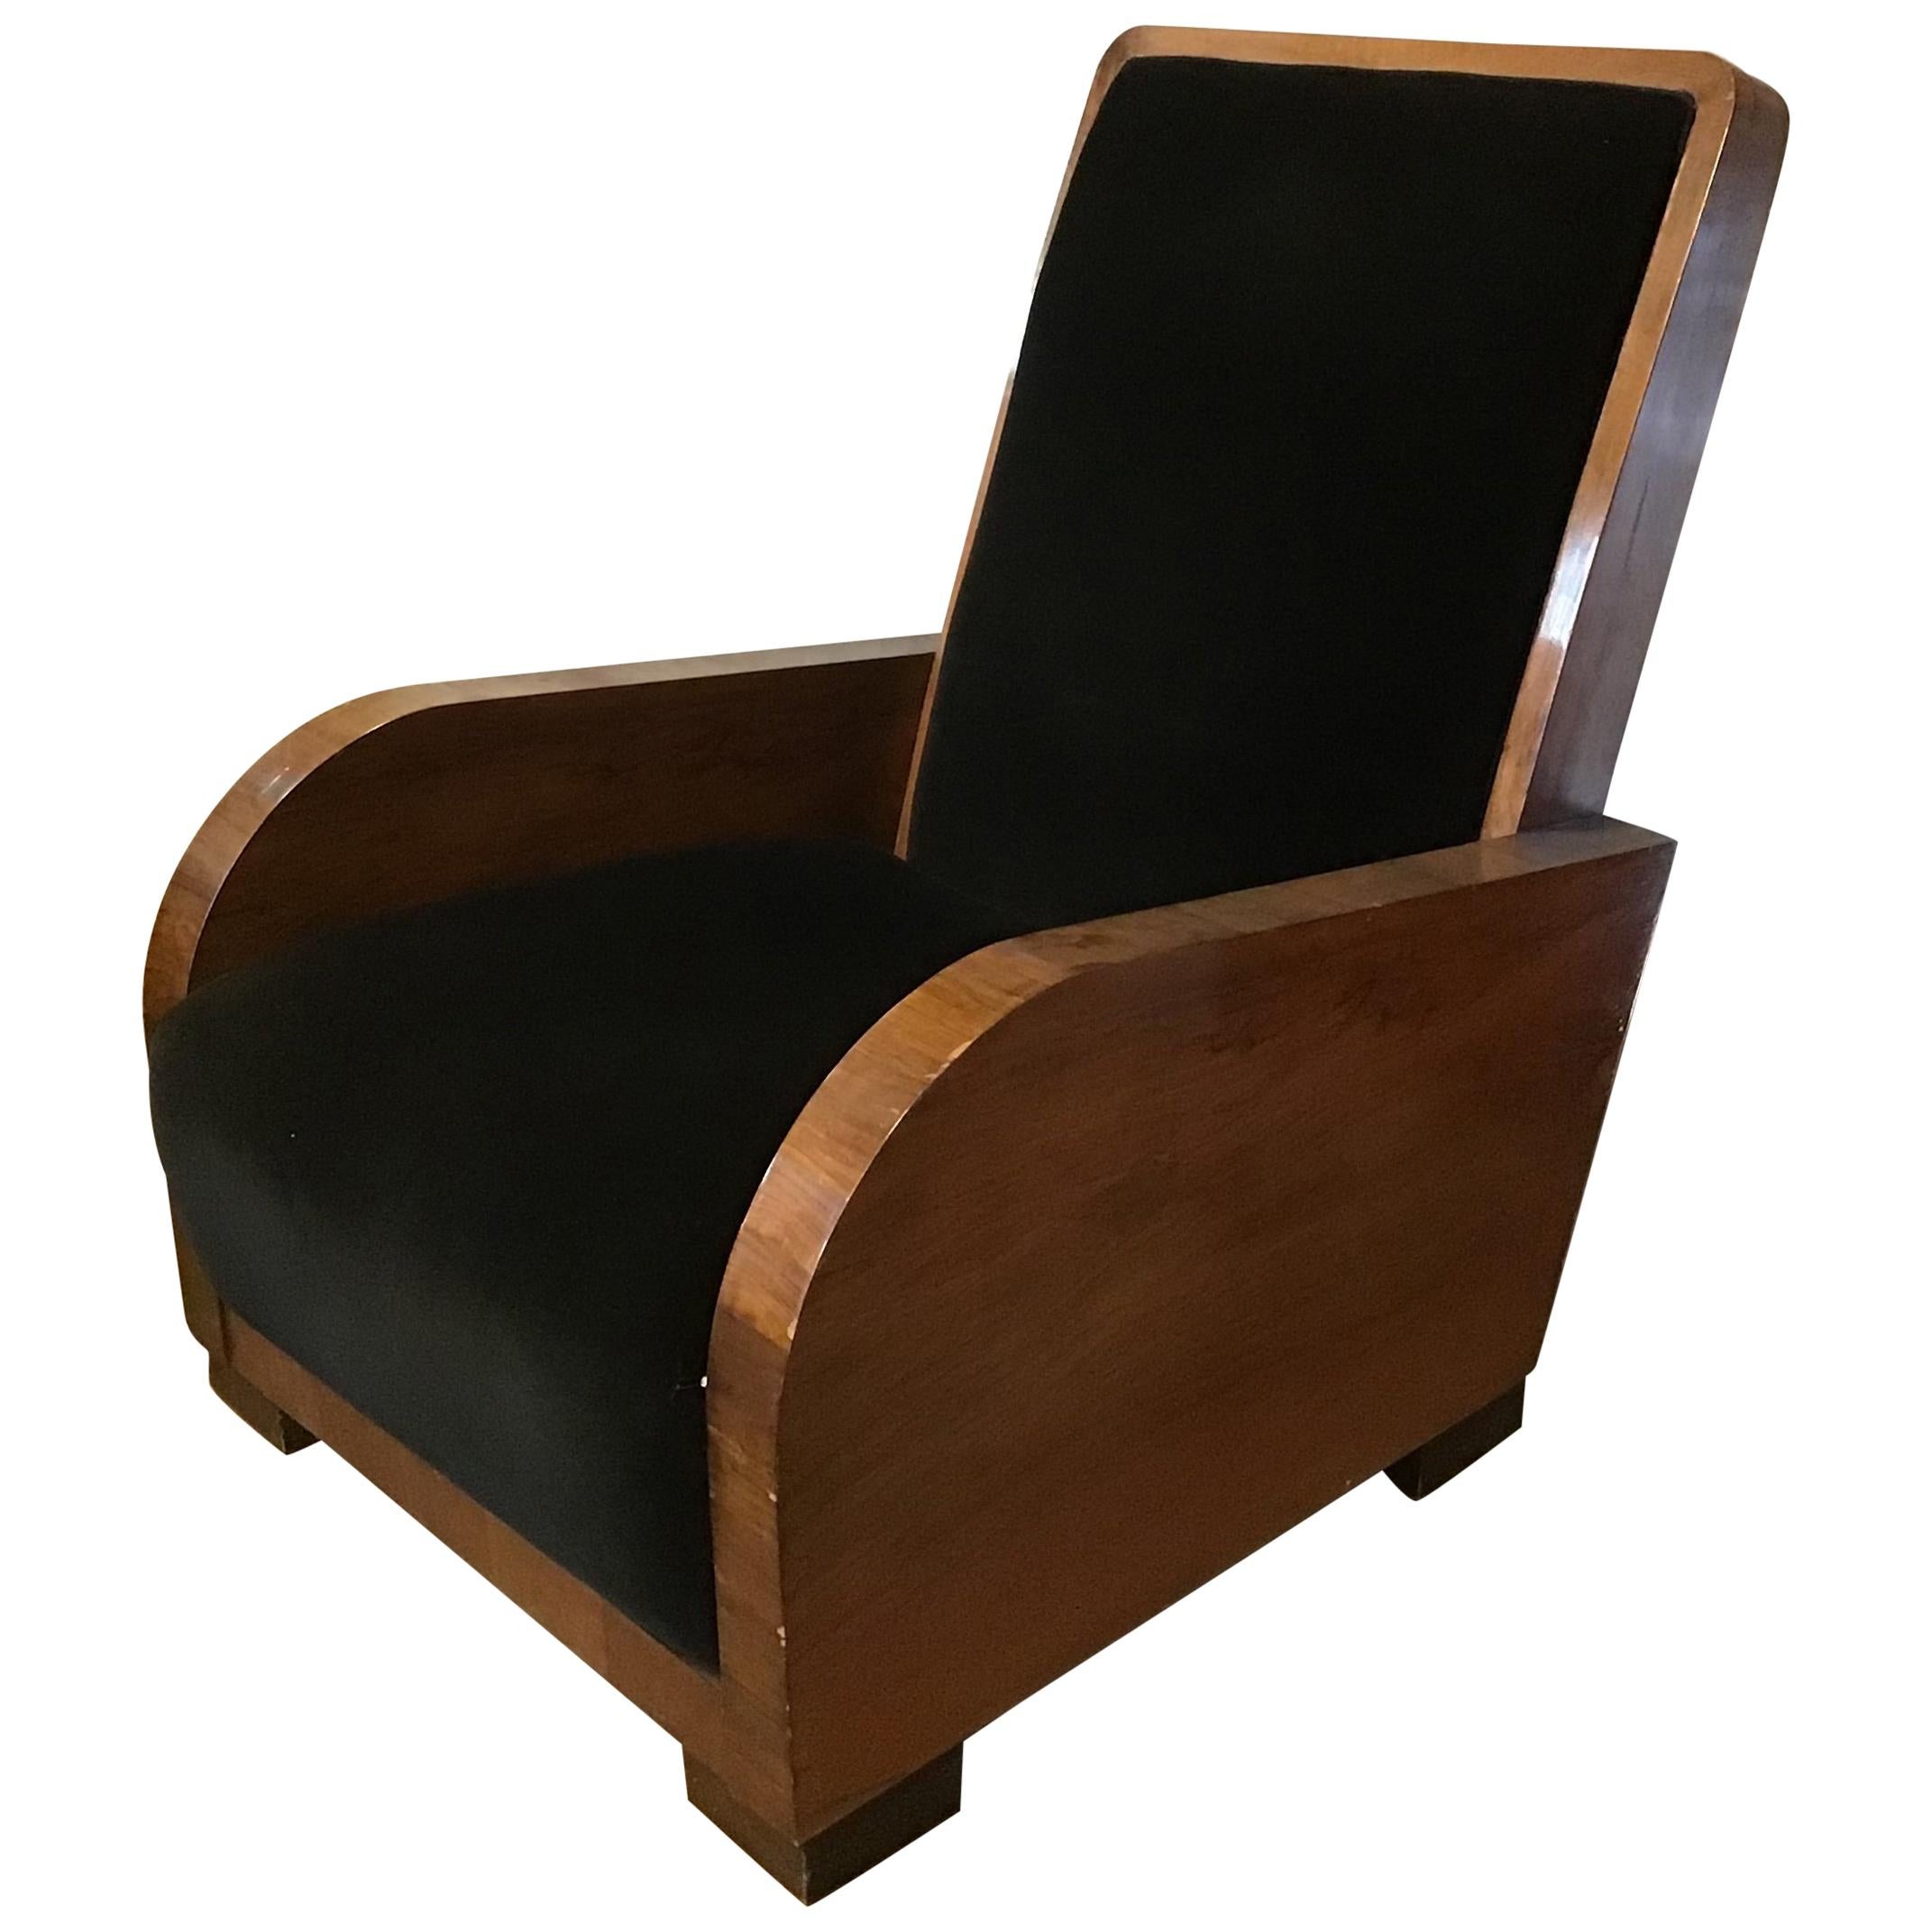 Italian Art Deco Velvet Upholstered Walnut Armchair from 1940s For Sale